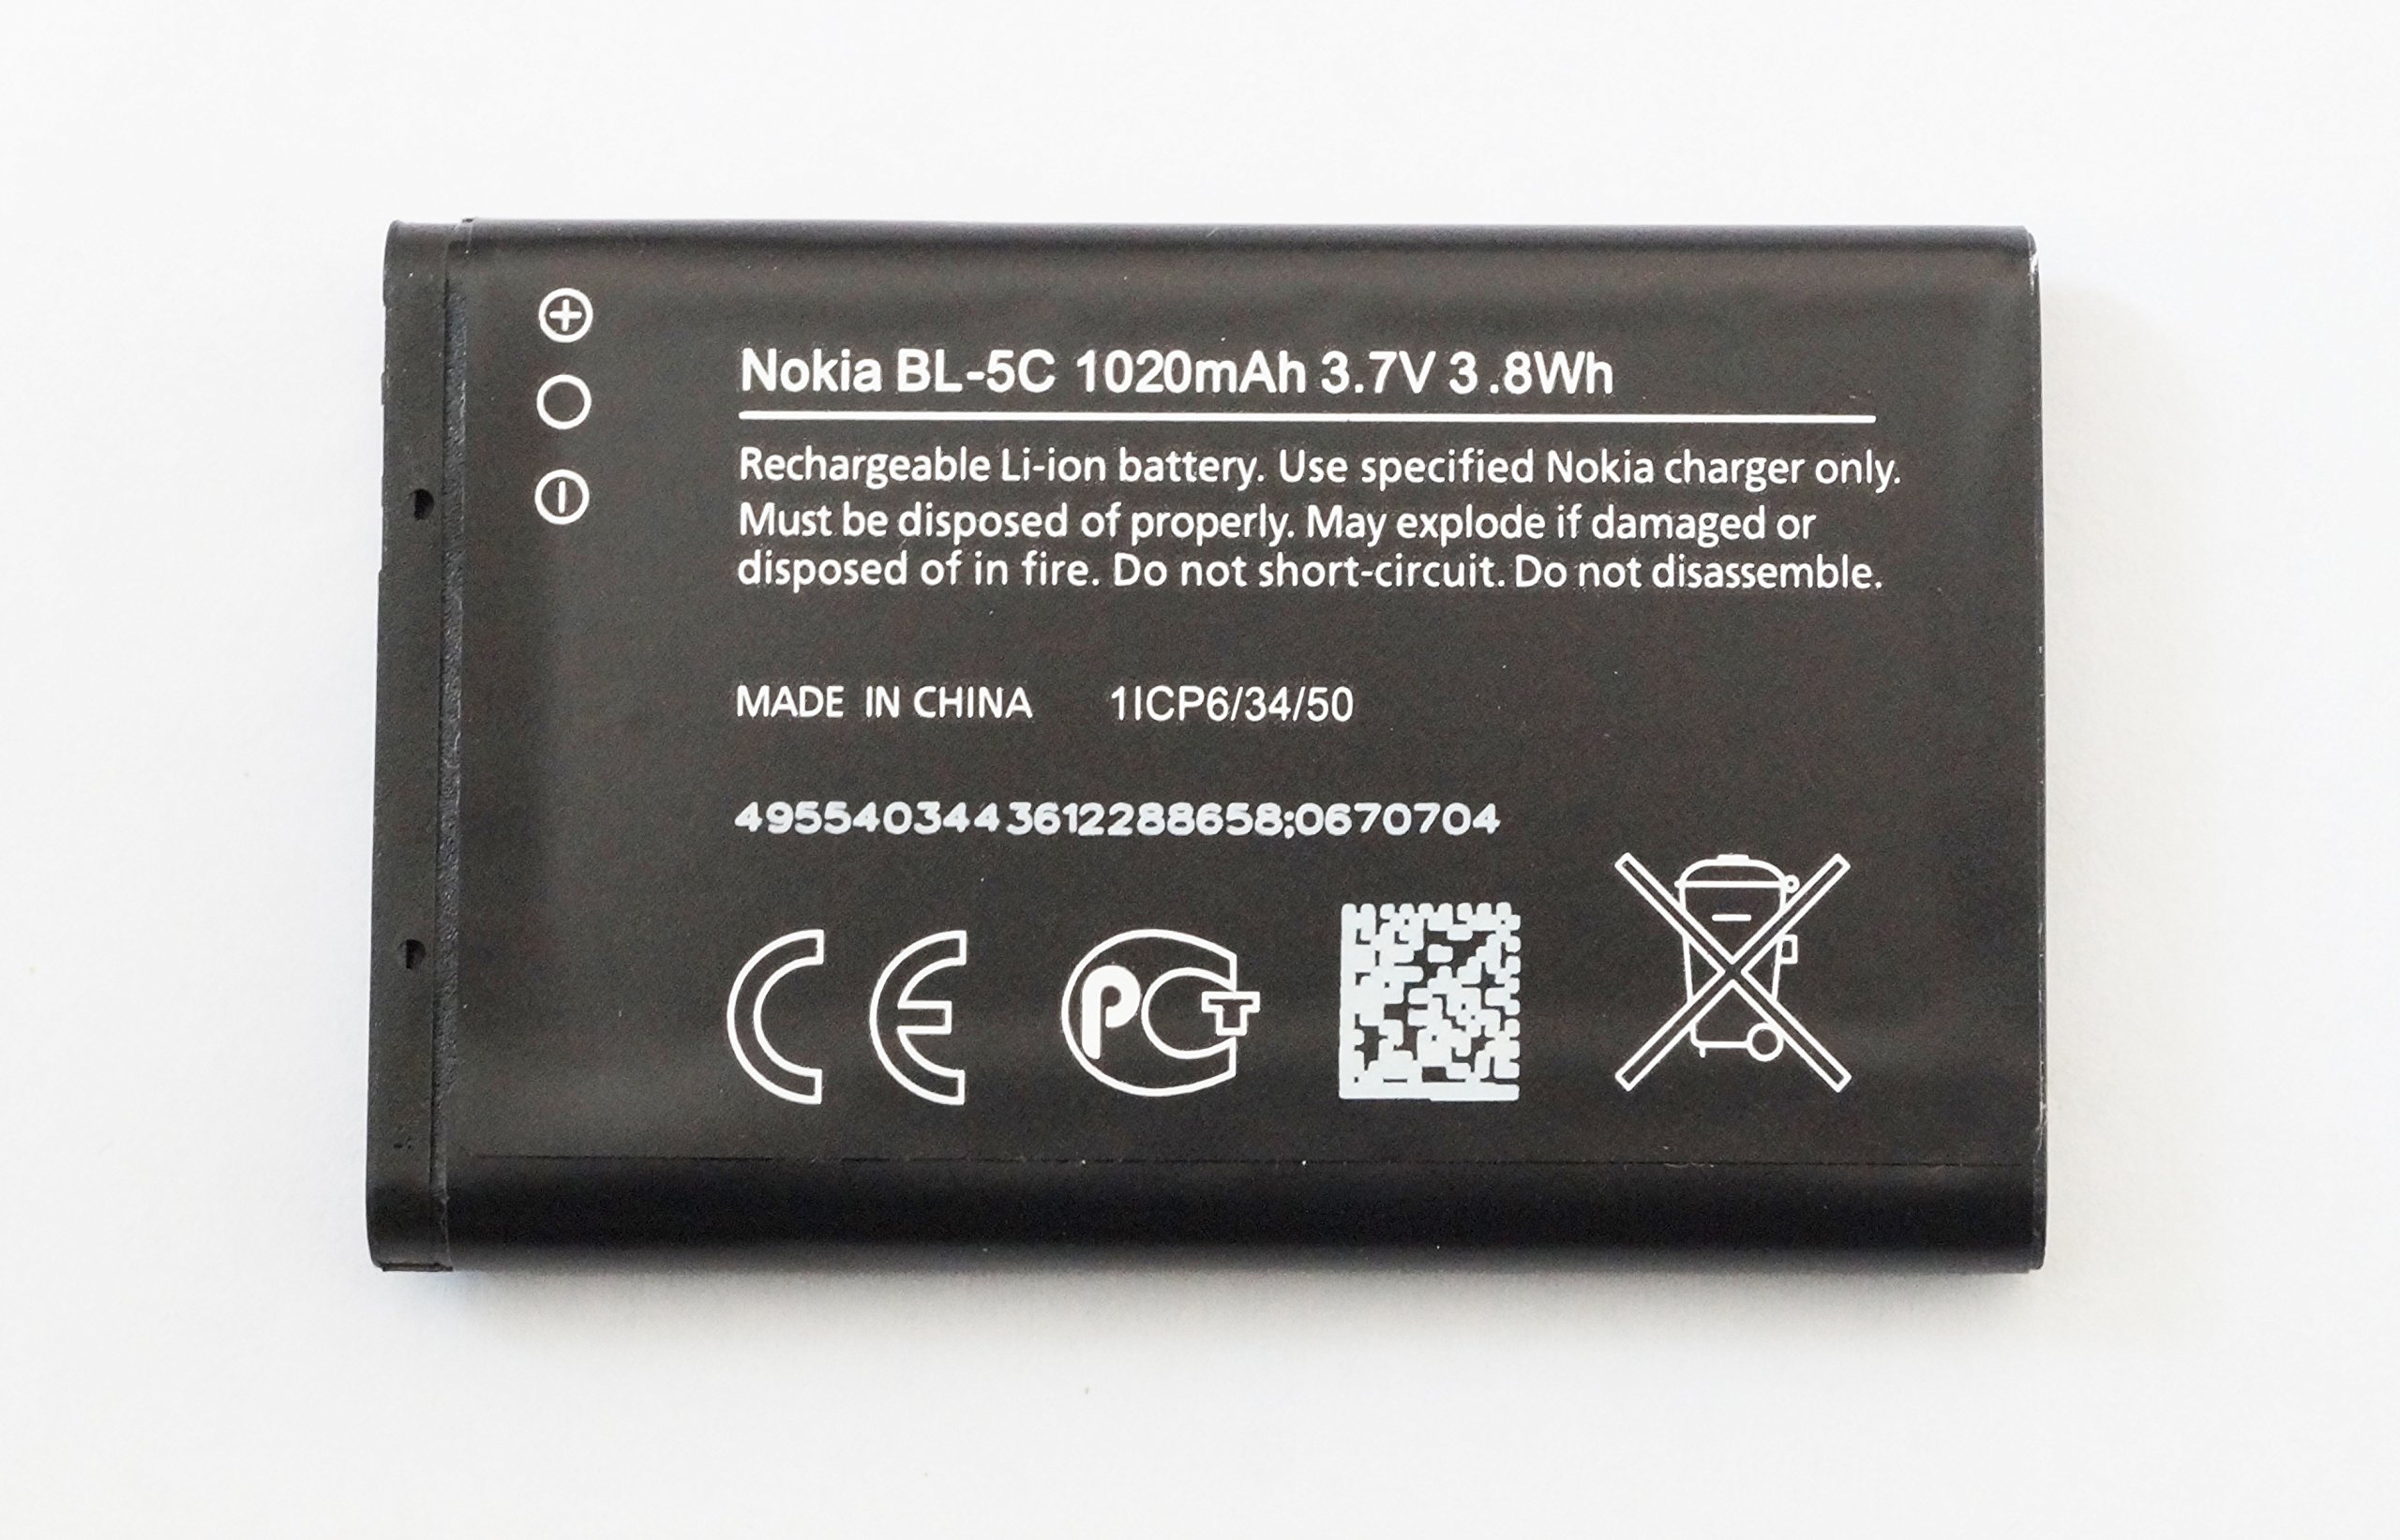 Требуется хороший аккумулятор для nokia с большим запасом энергии: выбираем bl-5c